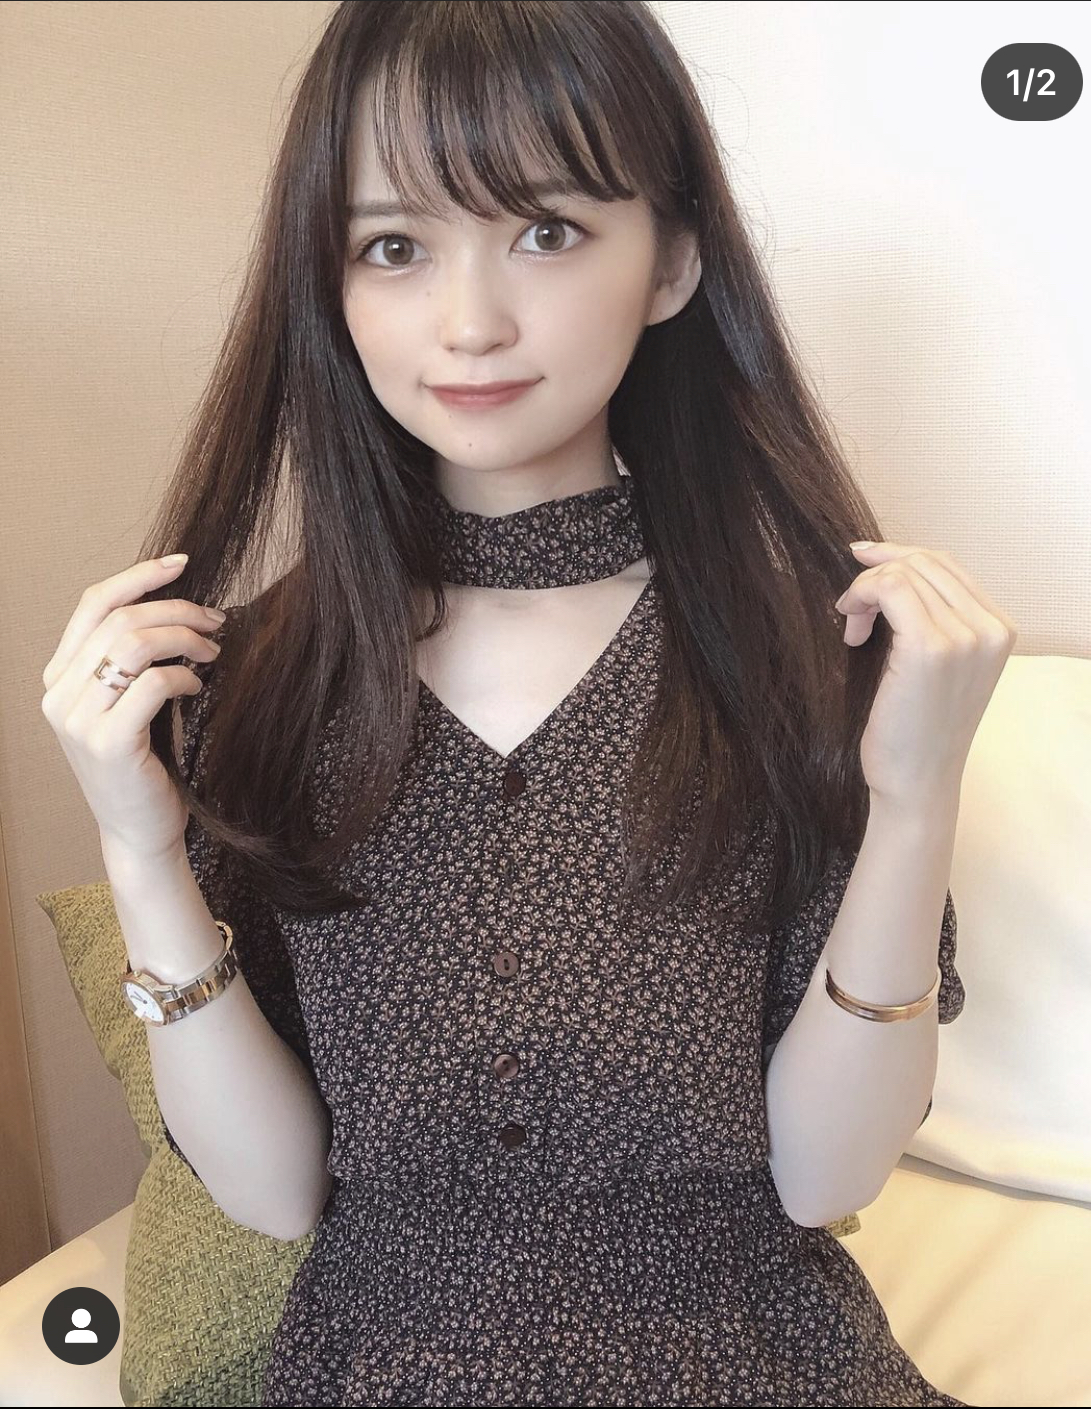 @moe___u tên thật là Moyu, một beauty blogger đến từ Nhật Bản có gương mặt xinh xắn nhưng chỉ sở hữu chiều cao khiêm tốn 1,55m. Cô nàng thường cập nhật các cách phối đồ dành cho nàng 'nấm lùn' trên Instagram cá nhân.